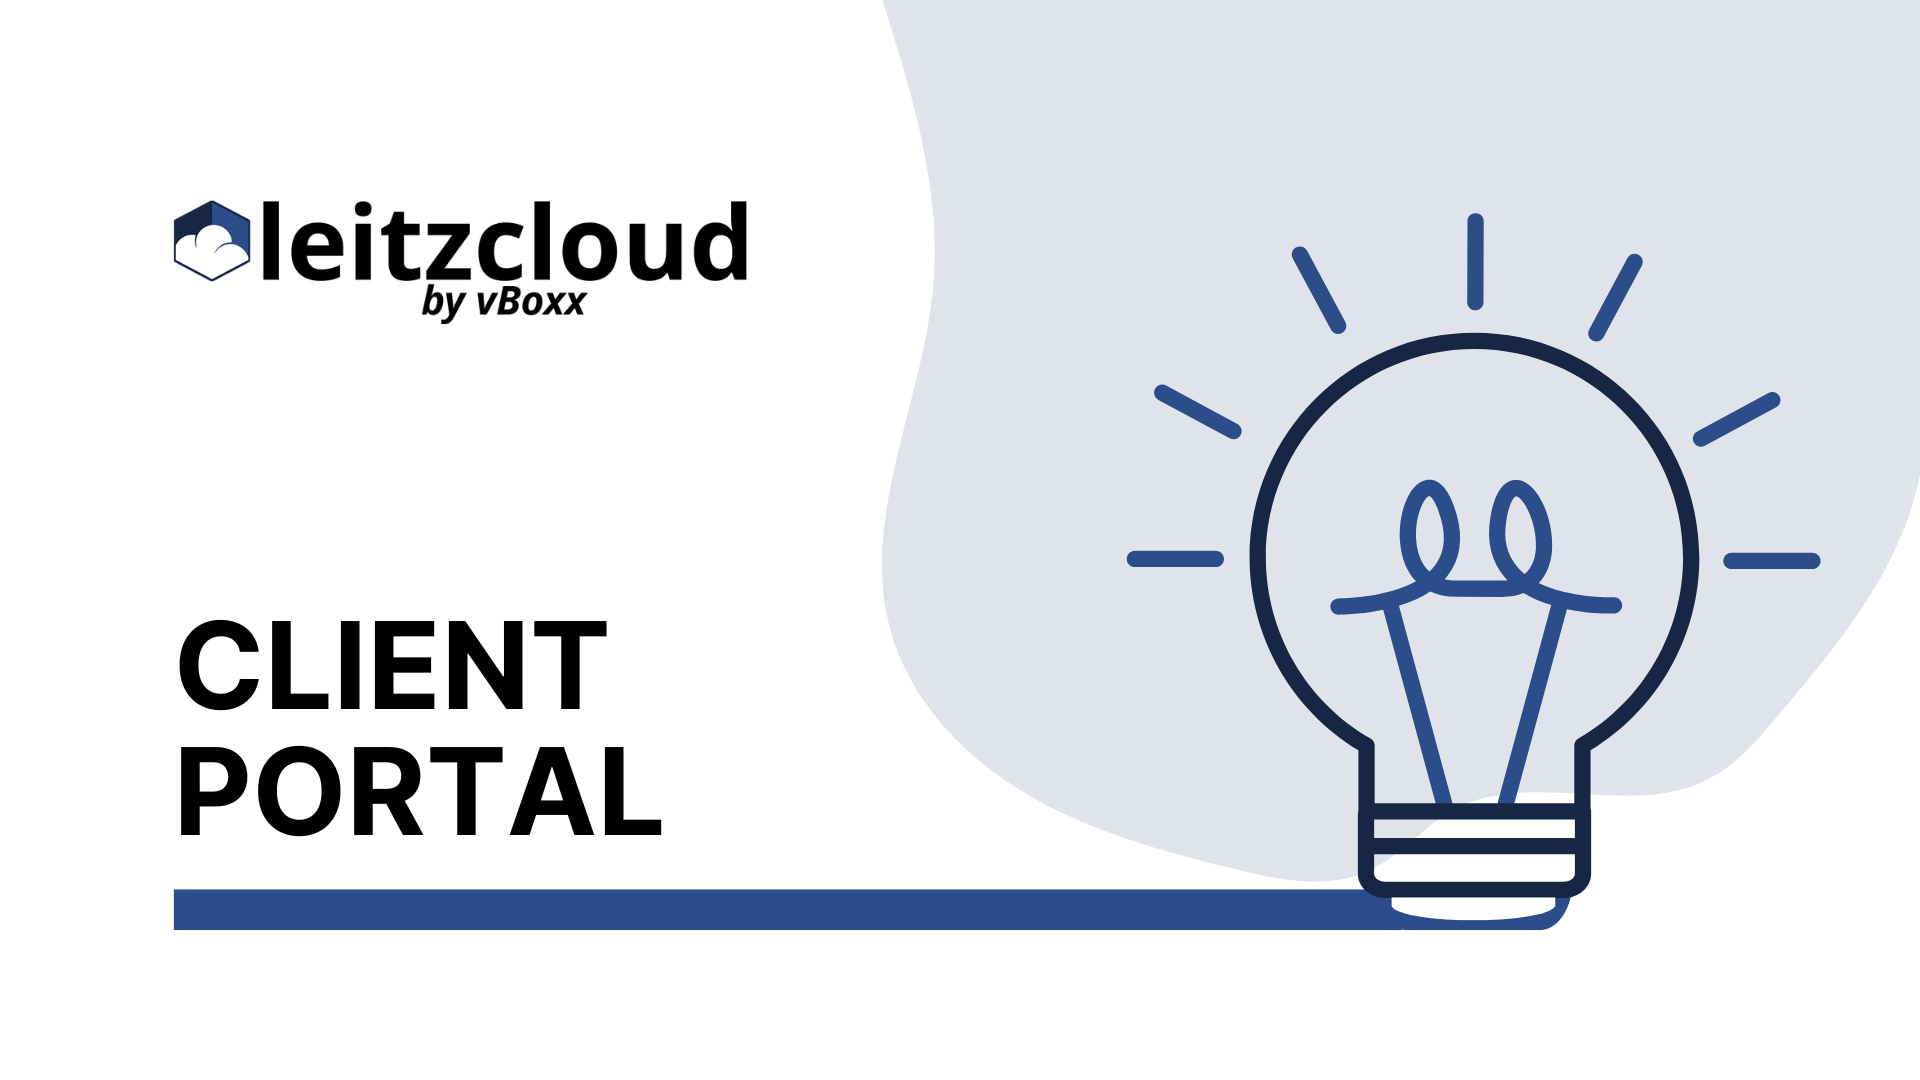 leitzcloud client portal video